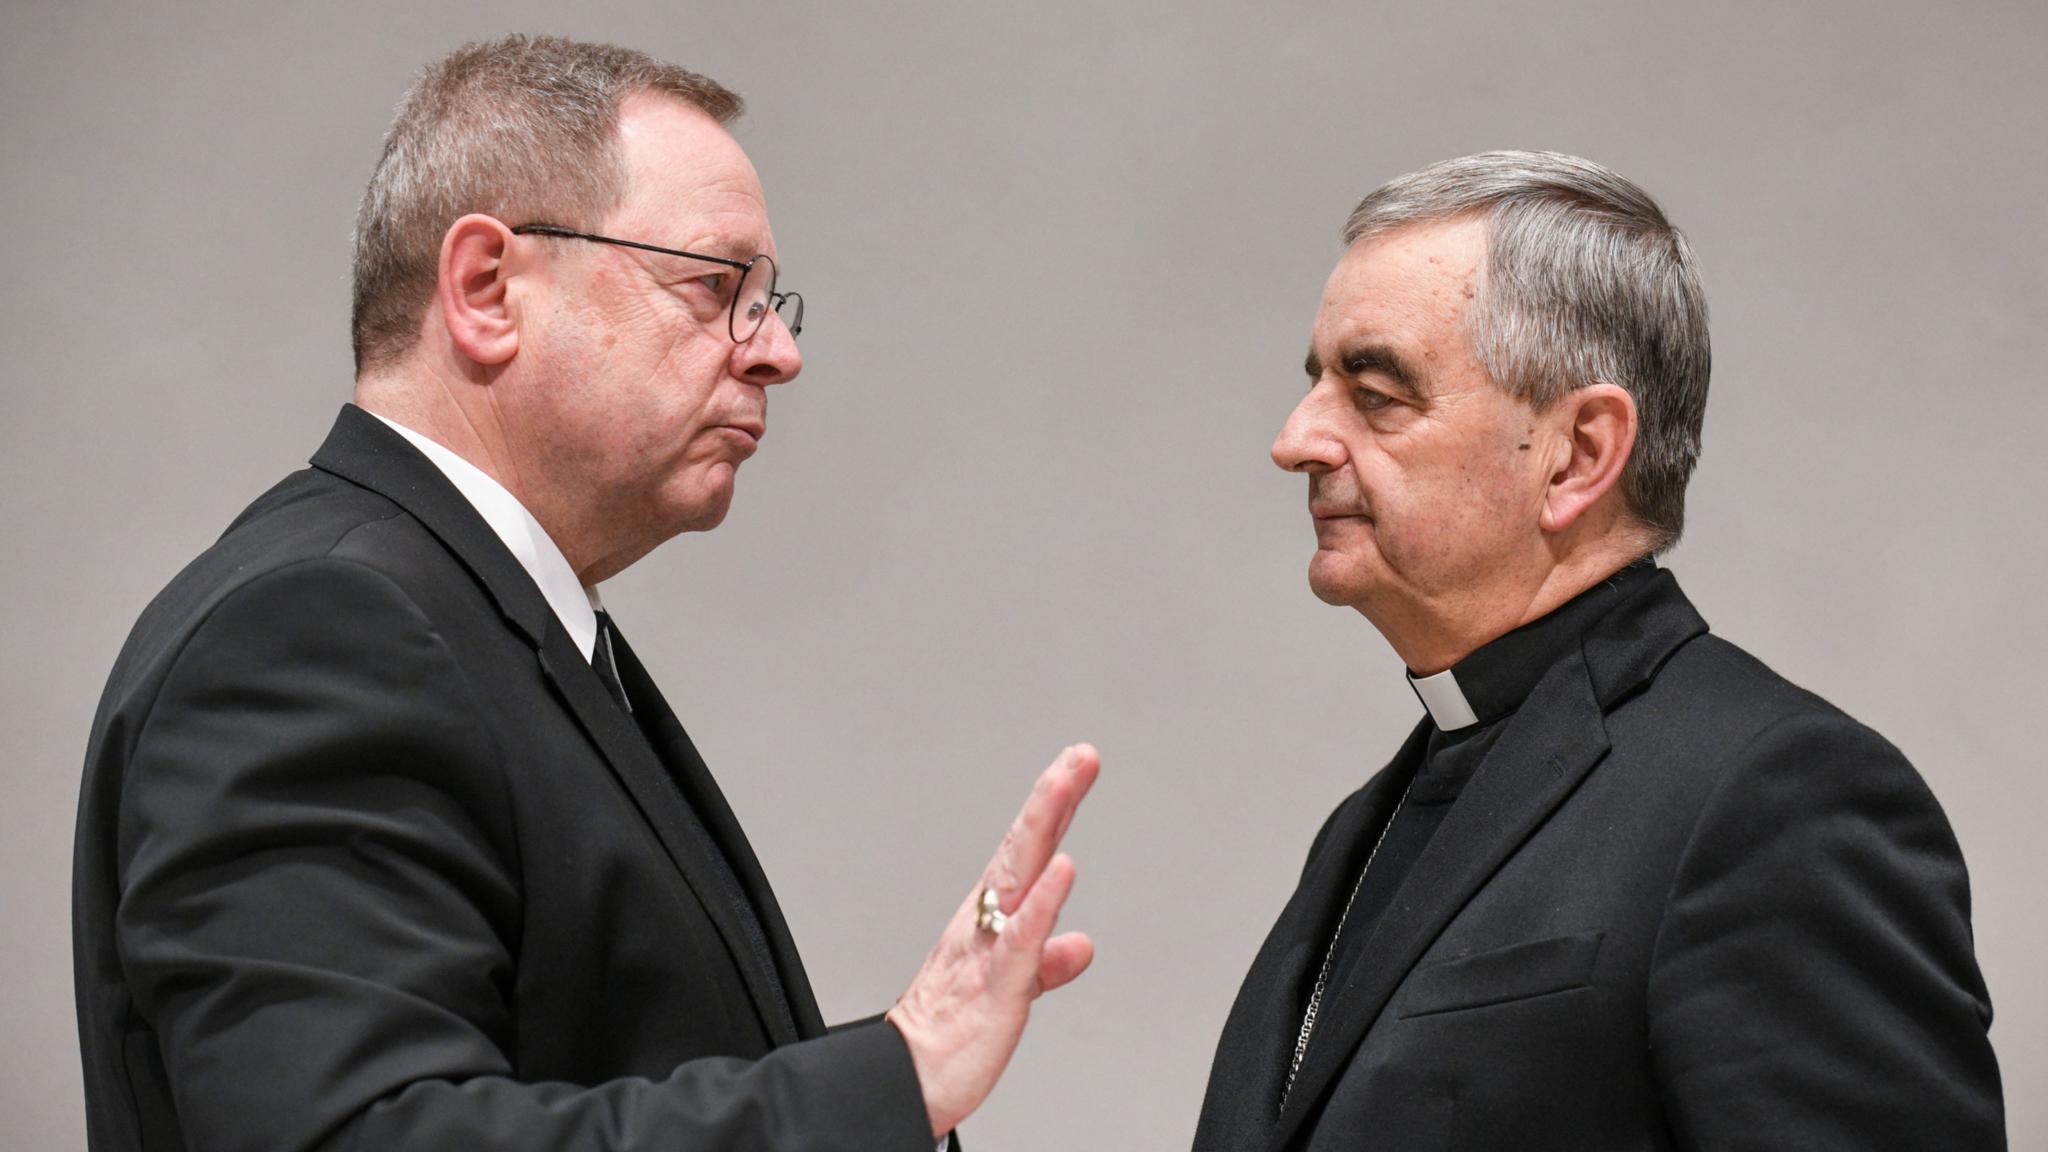 Bischof Georg Bätzing (links) und Papstbotschafter Nikola Eterovic bei der Frühjahrsvollversammlung der deutschen Bischöfe.